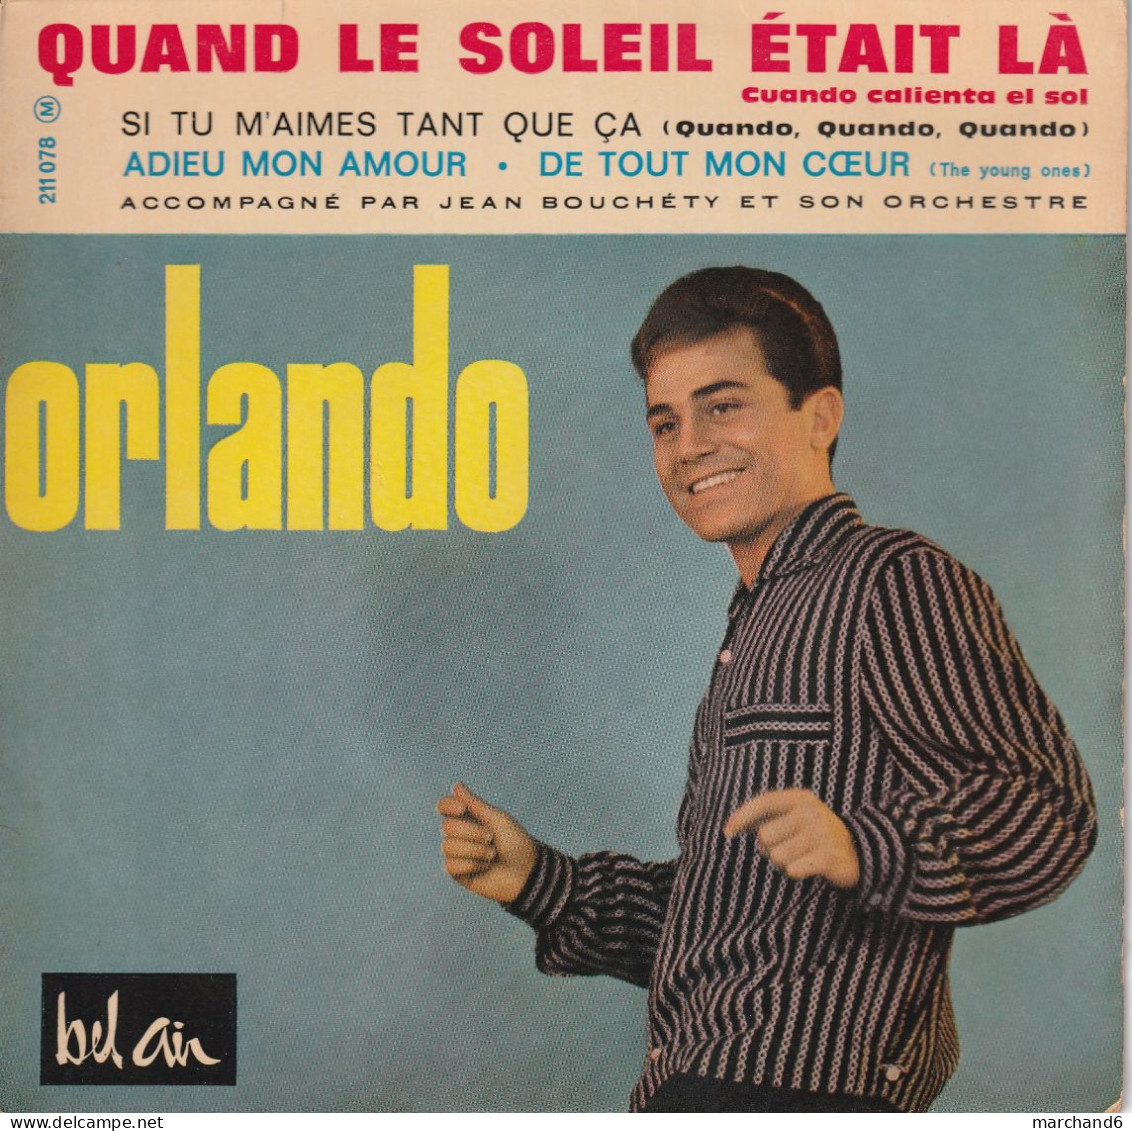 Orlando Bel Air 211 078 3/63 Quand Le Soleil était La/adieu Mon Amour/si Tu M'aimes Tant Que Ca/de Tout Mon Coeur - Other - French Music